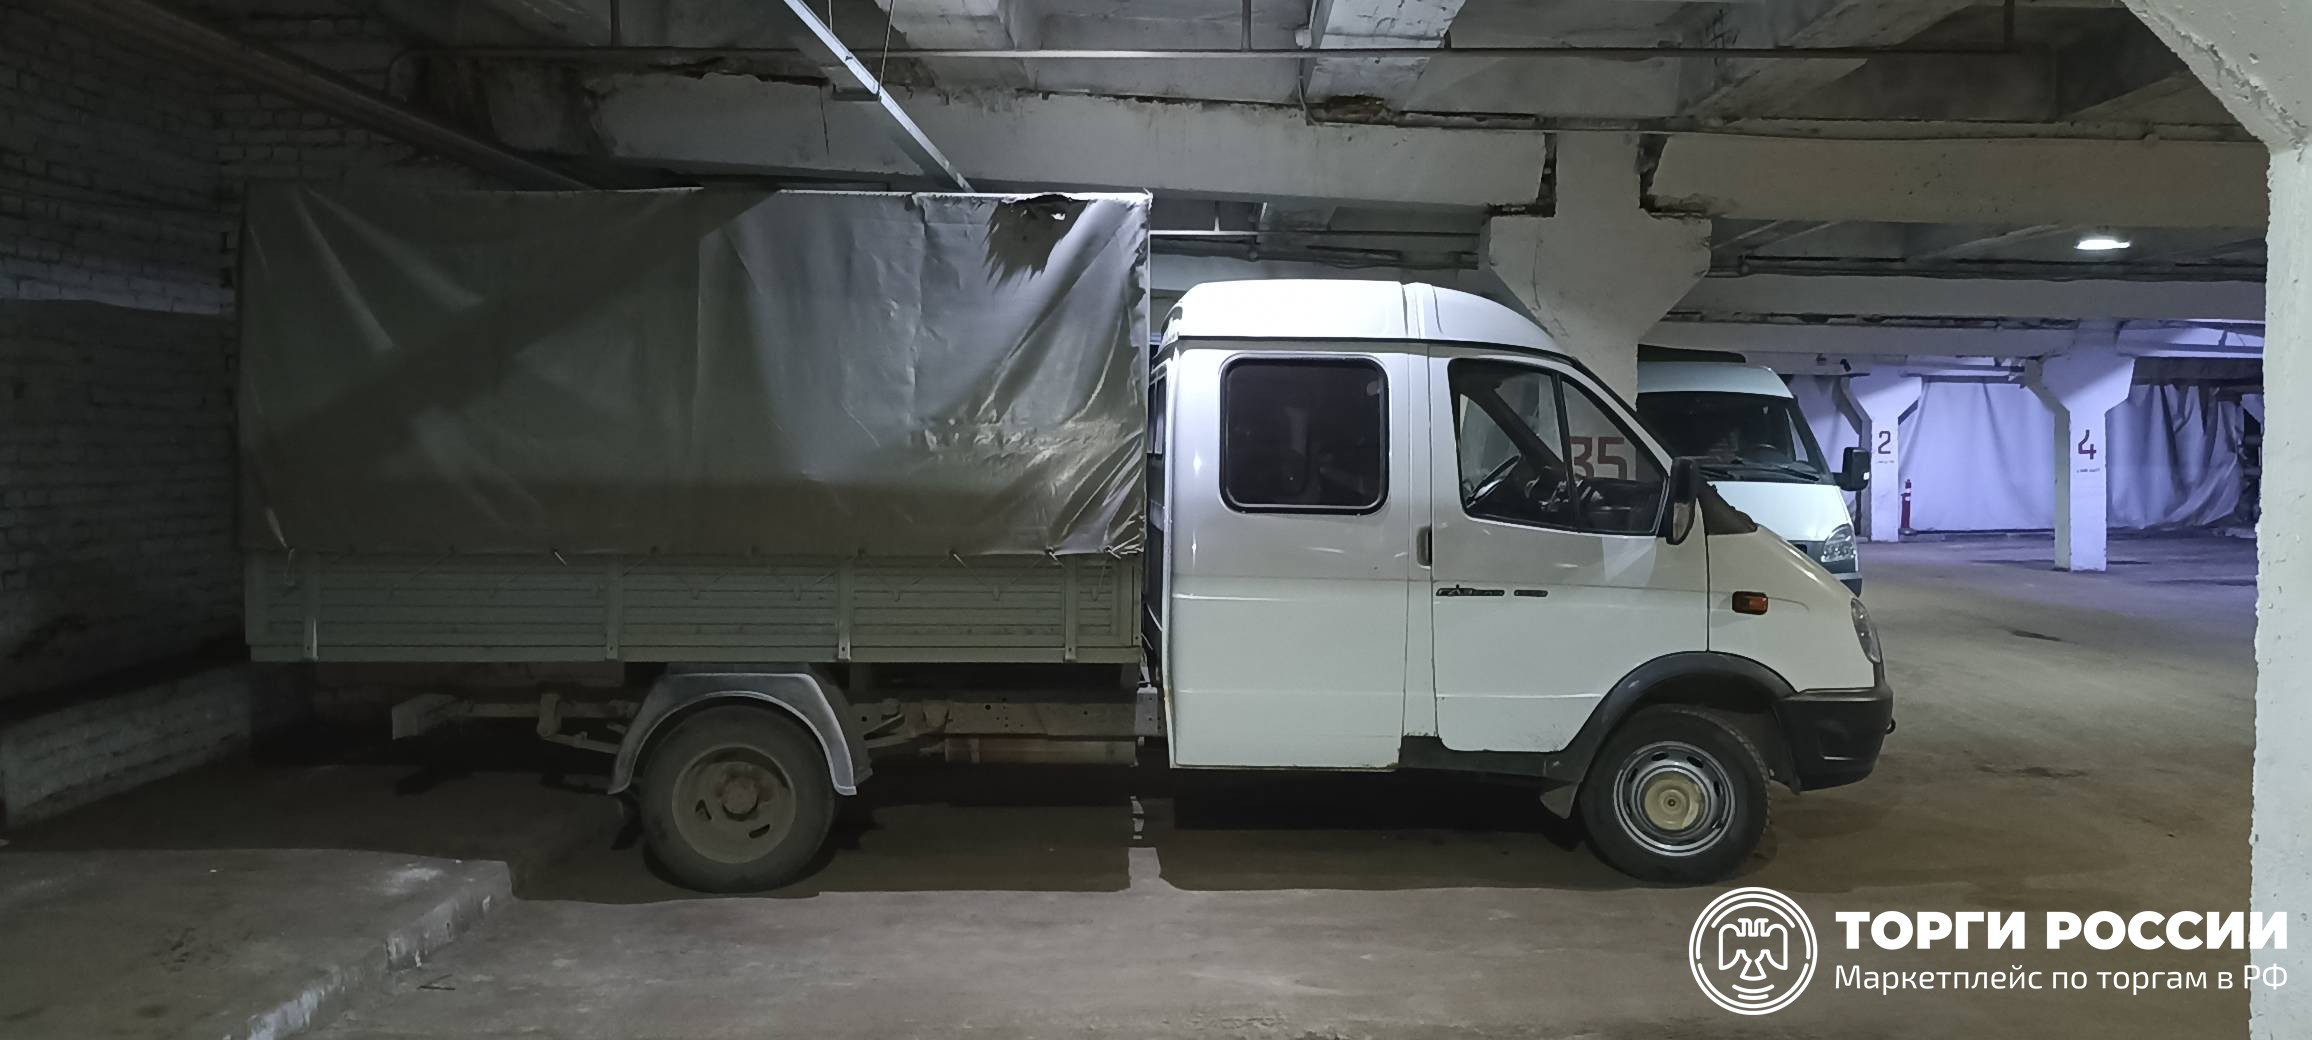 Транспортное средство ГАЗ-330232 грузовой с бортовой платформой, 2014 года. Грузовой фургон на базе легкового автомобиля ГАЗ 330232. Газель 330232 технические характеристики